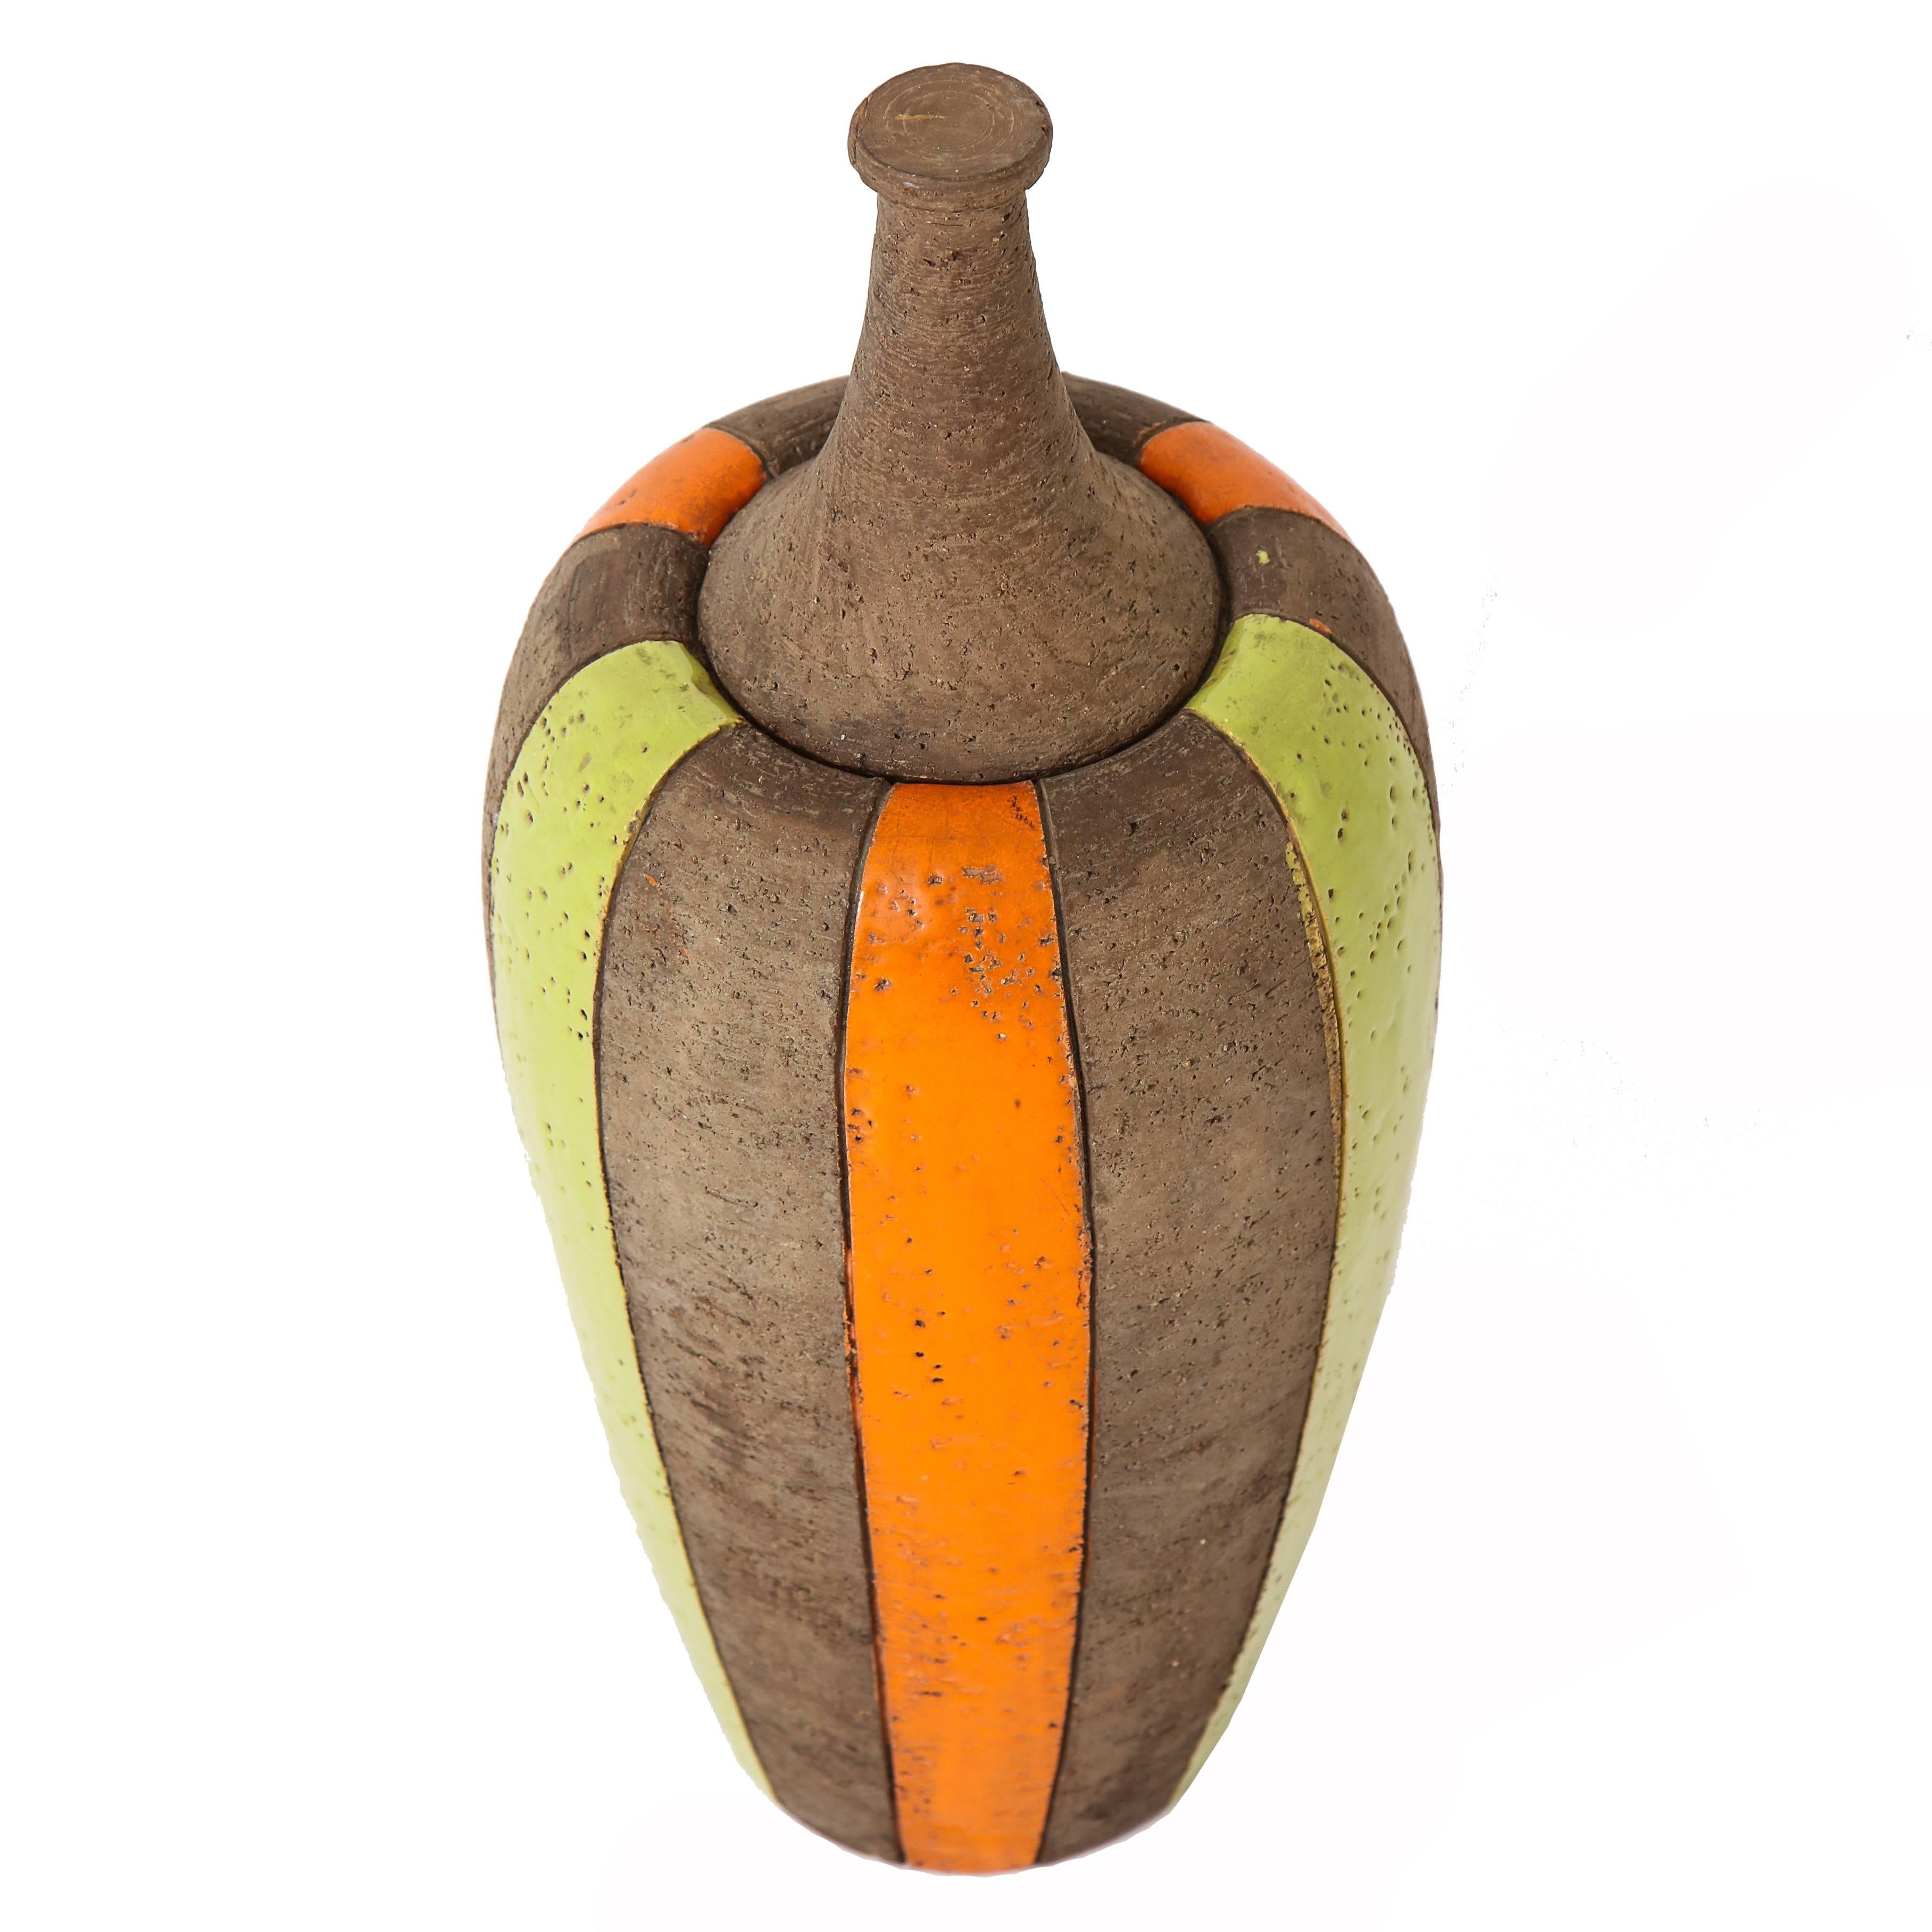 Bitossi Deckelvase, Keramik, maurische Streifen, Chartreuse, Orange und Braun, signiert. Große Deckelvase aus der Serie Moorish Stripes von Aldo Londi. Der Korpus ist mit abwechselnd in Chartreuse und Orange glasierten Streifen über einem groben